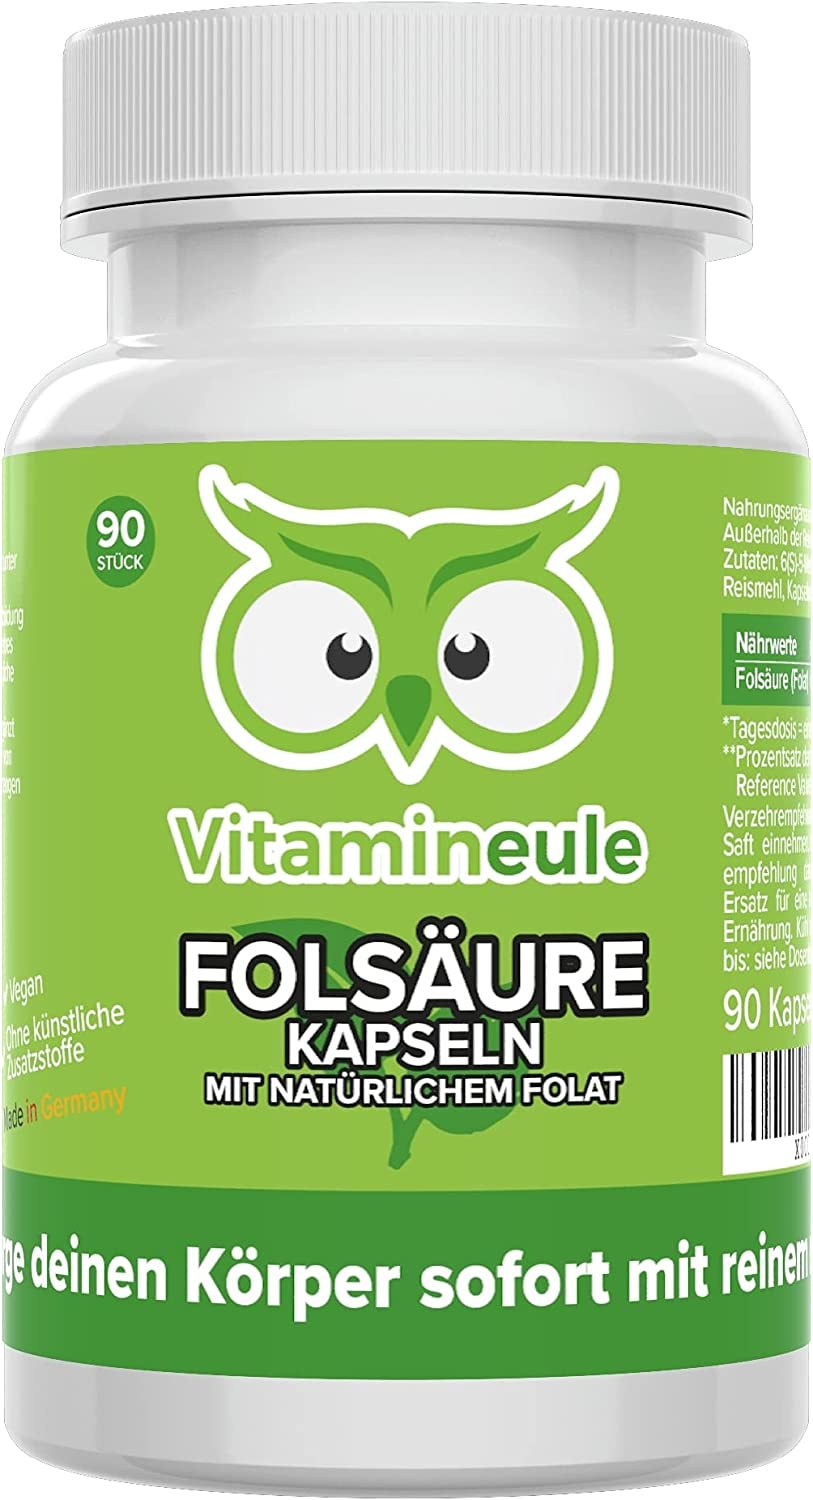 Vitamineule - Folsäure Kapseln - 100% natürliches Folat - 400 µg 5-MTHF - hochdosiert - bei Kinderwunsch & Schwangerschaft - ohne Zusätze - vegan - Qualität aus Deutschland - Vitamin B9 ohne Jod - Vitamineule®